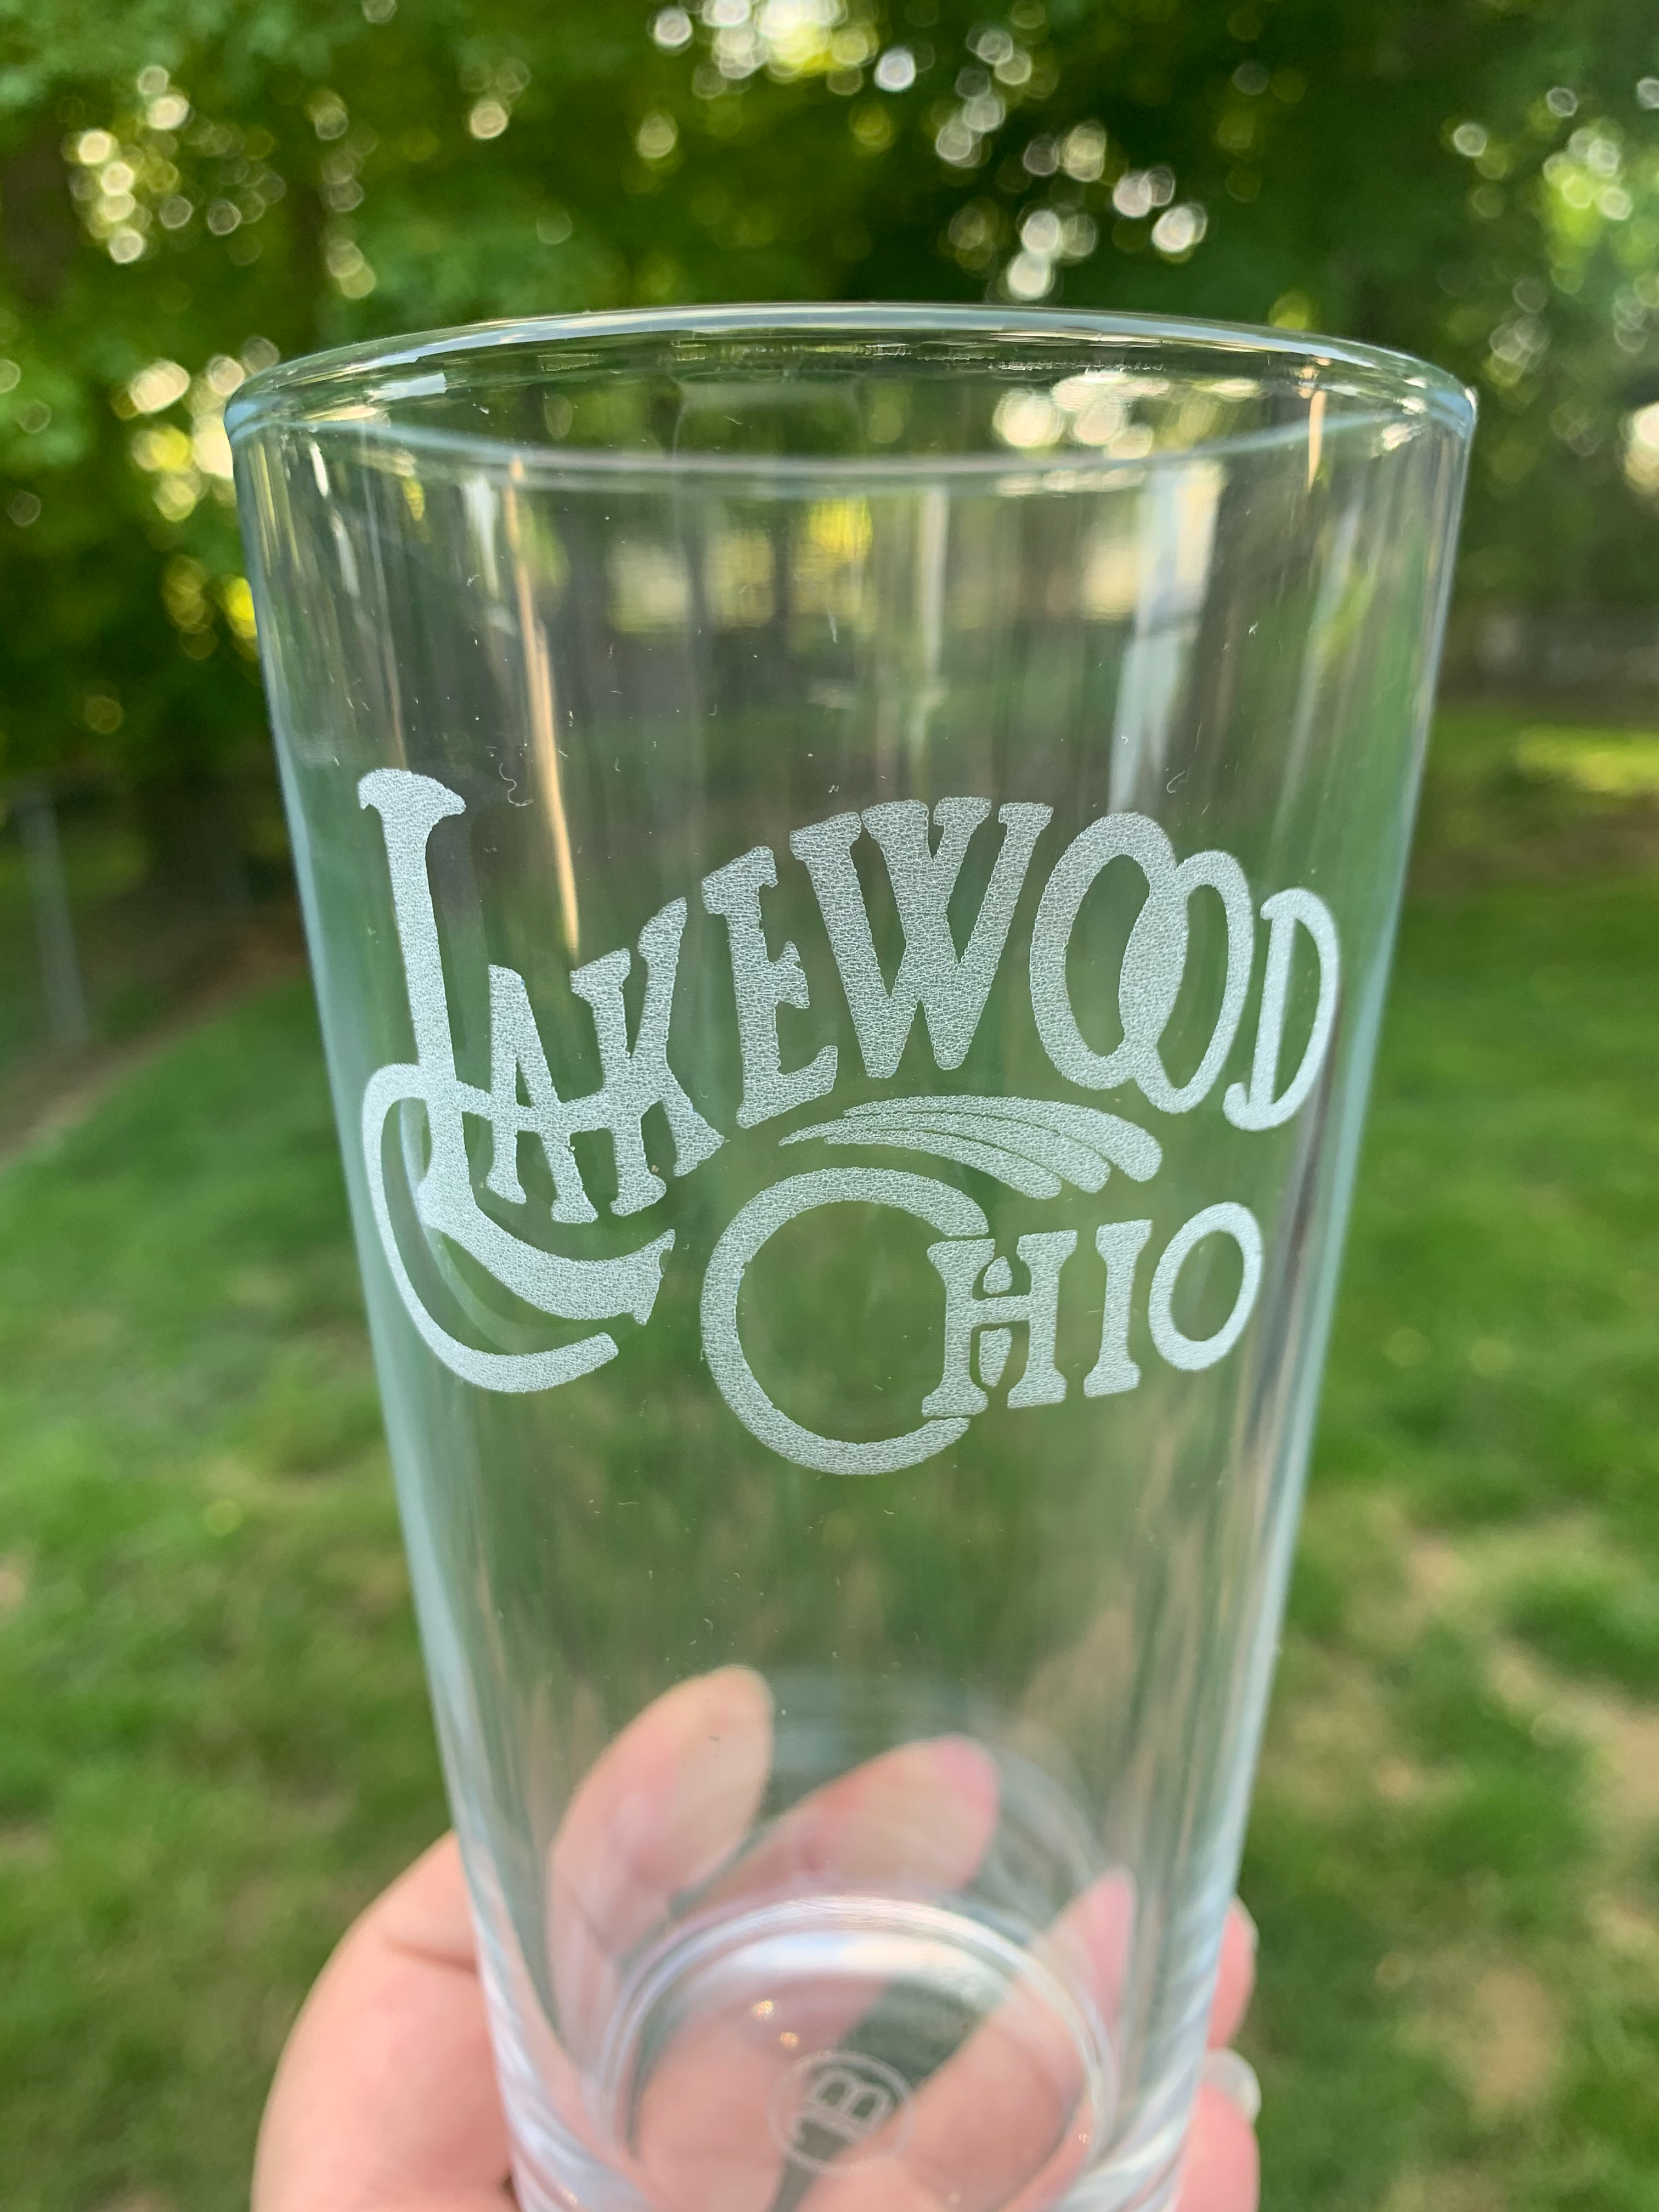 Lakewood Ohio Pint Glass